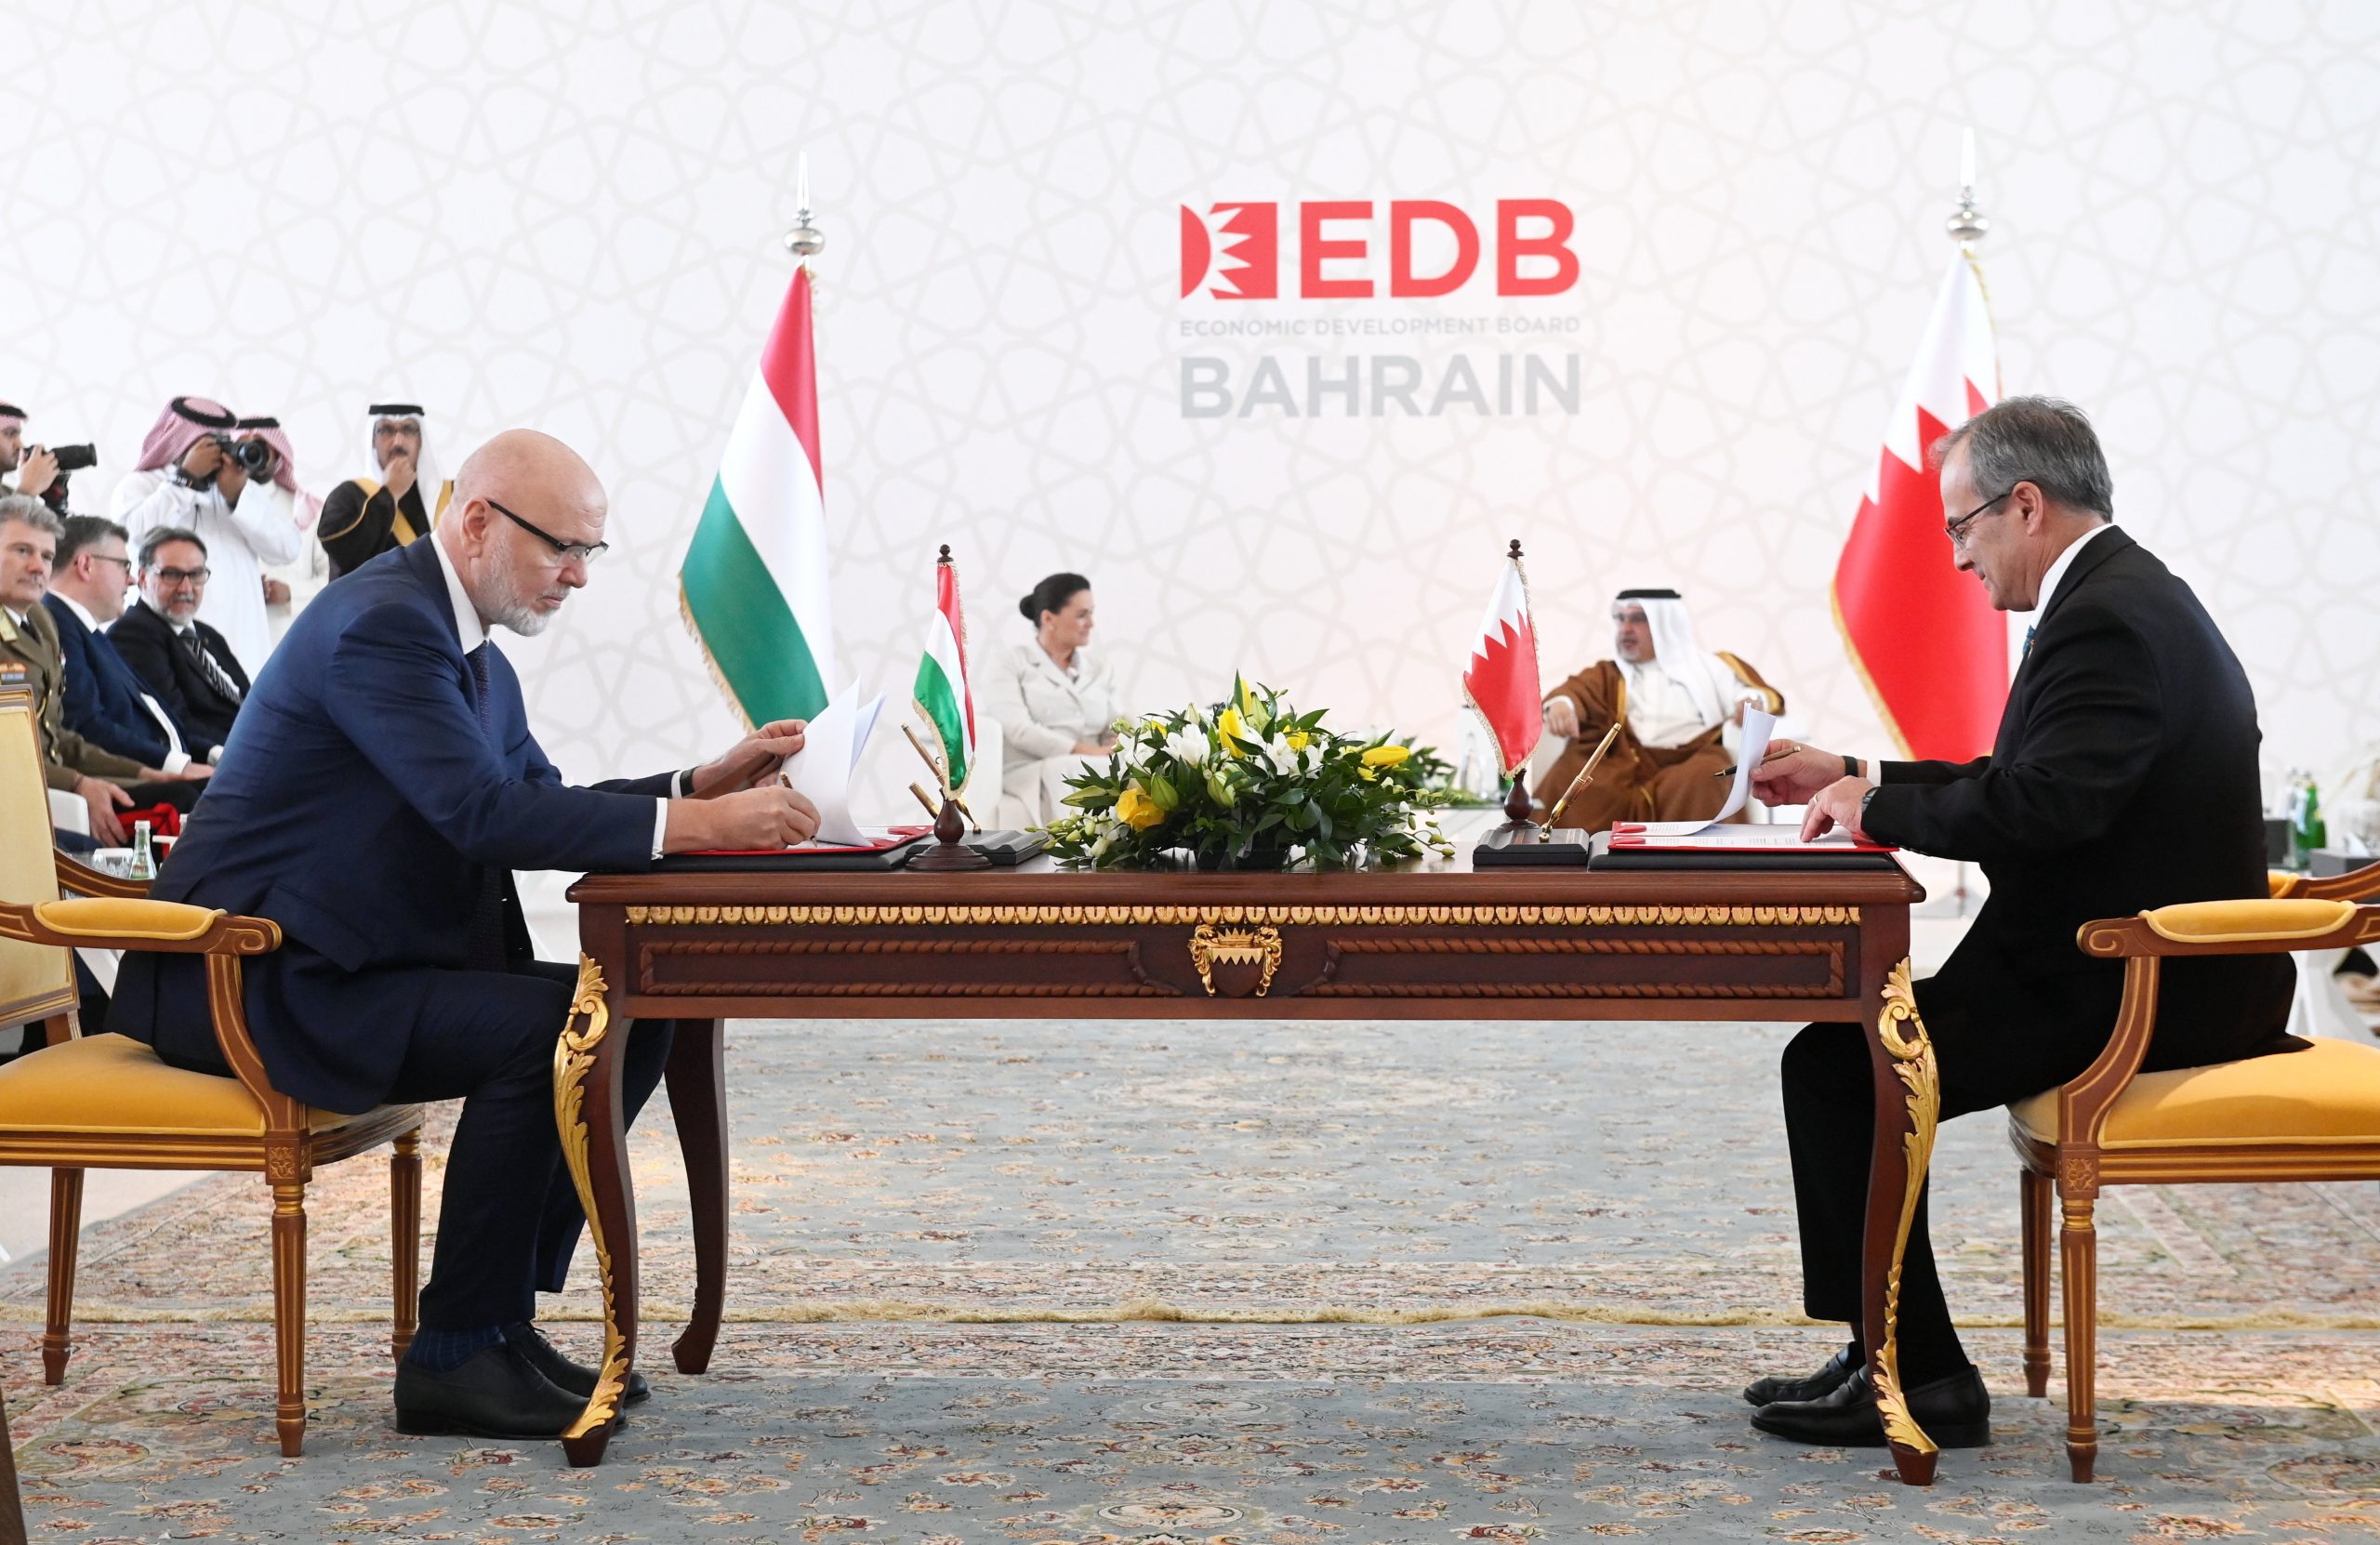 Ölgesellschaft MOL hat zwei Kooperationsabkommen in Bahrain unterzeichnet